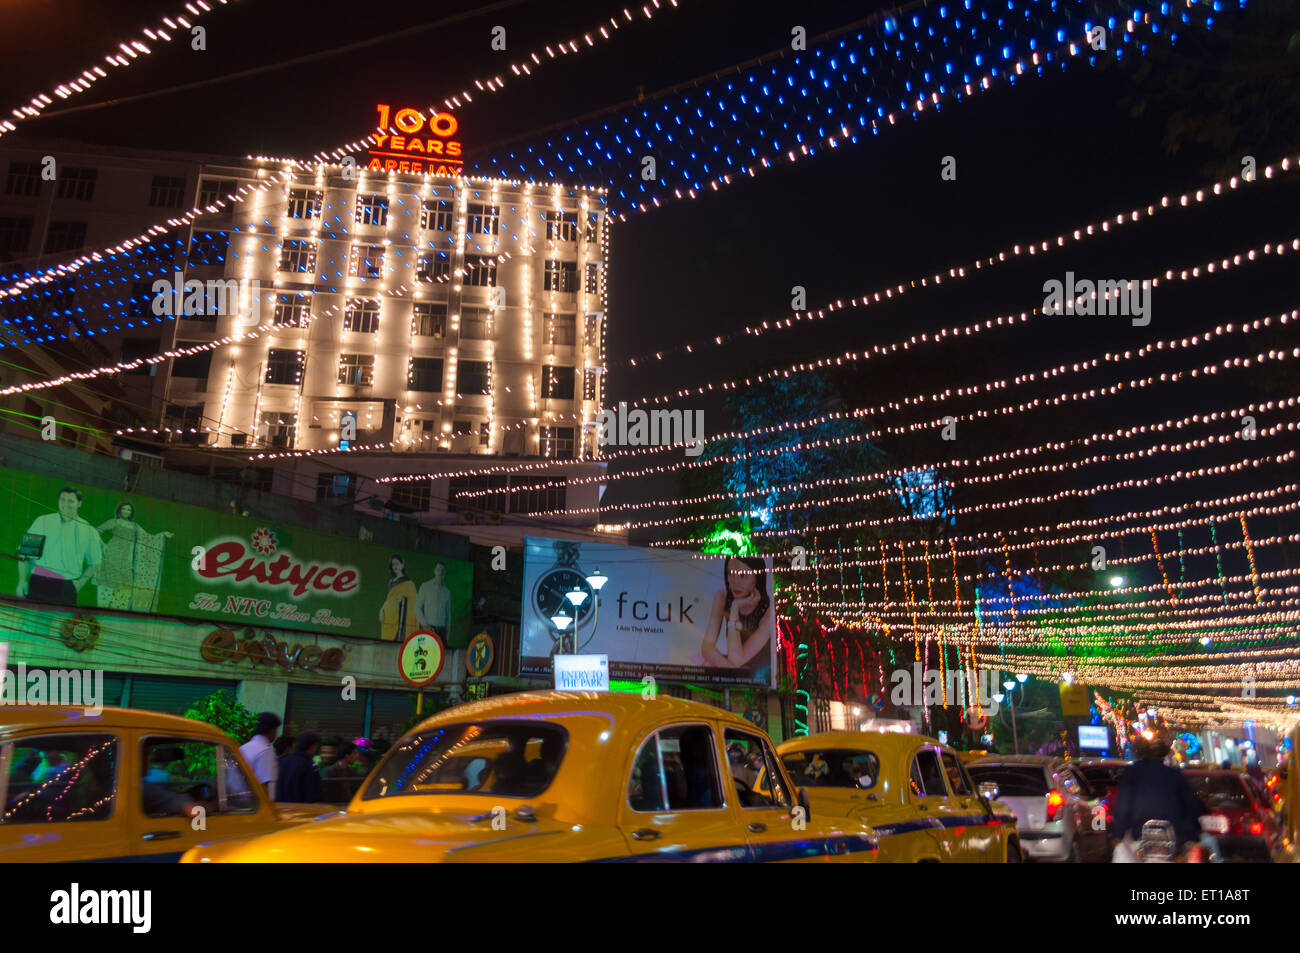 La célébration du Nouvel an à la rue Park Kolkata Inde Asie Banque D'Images